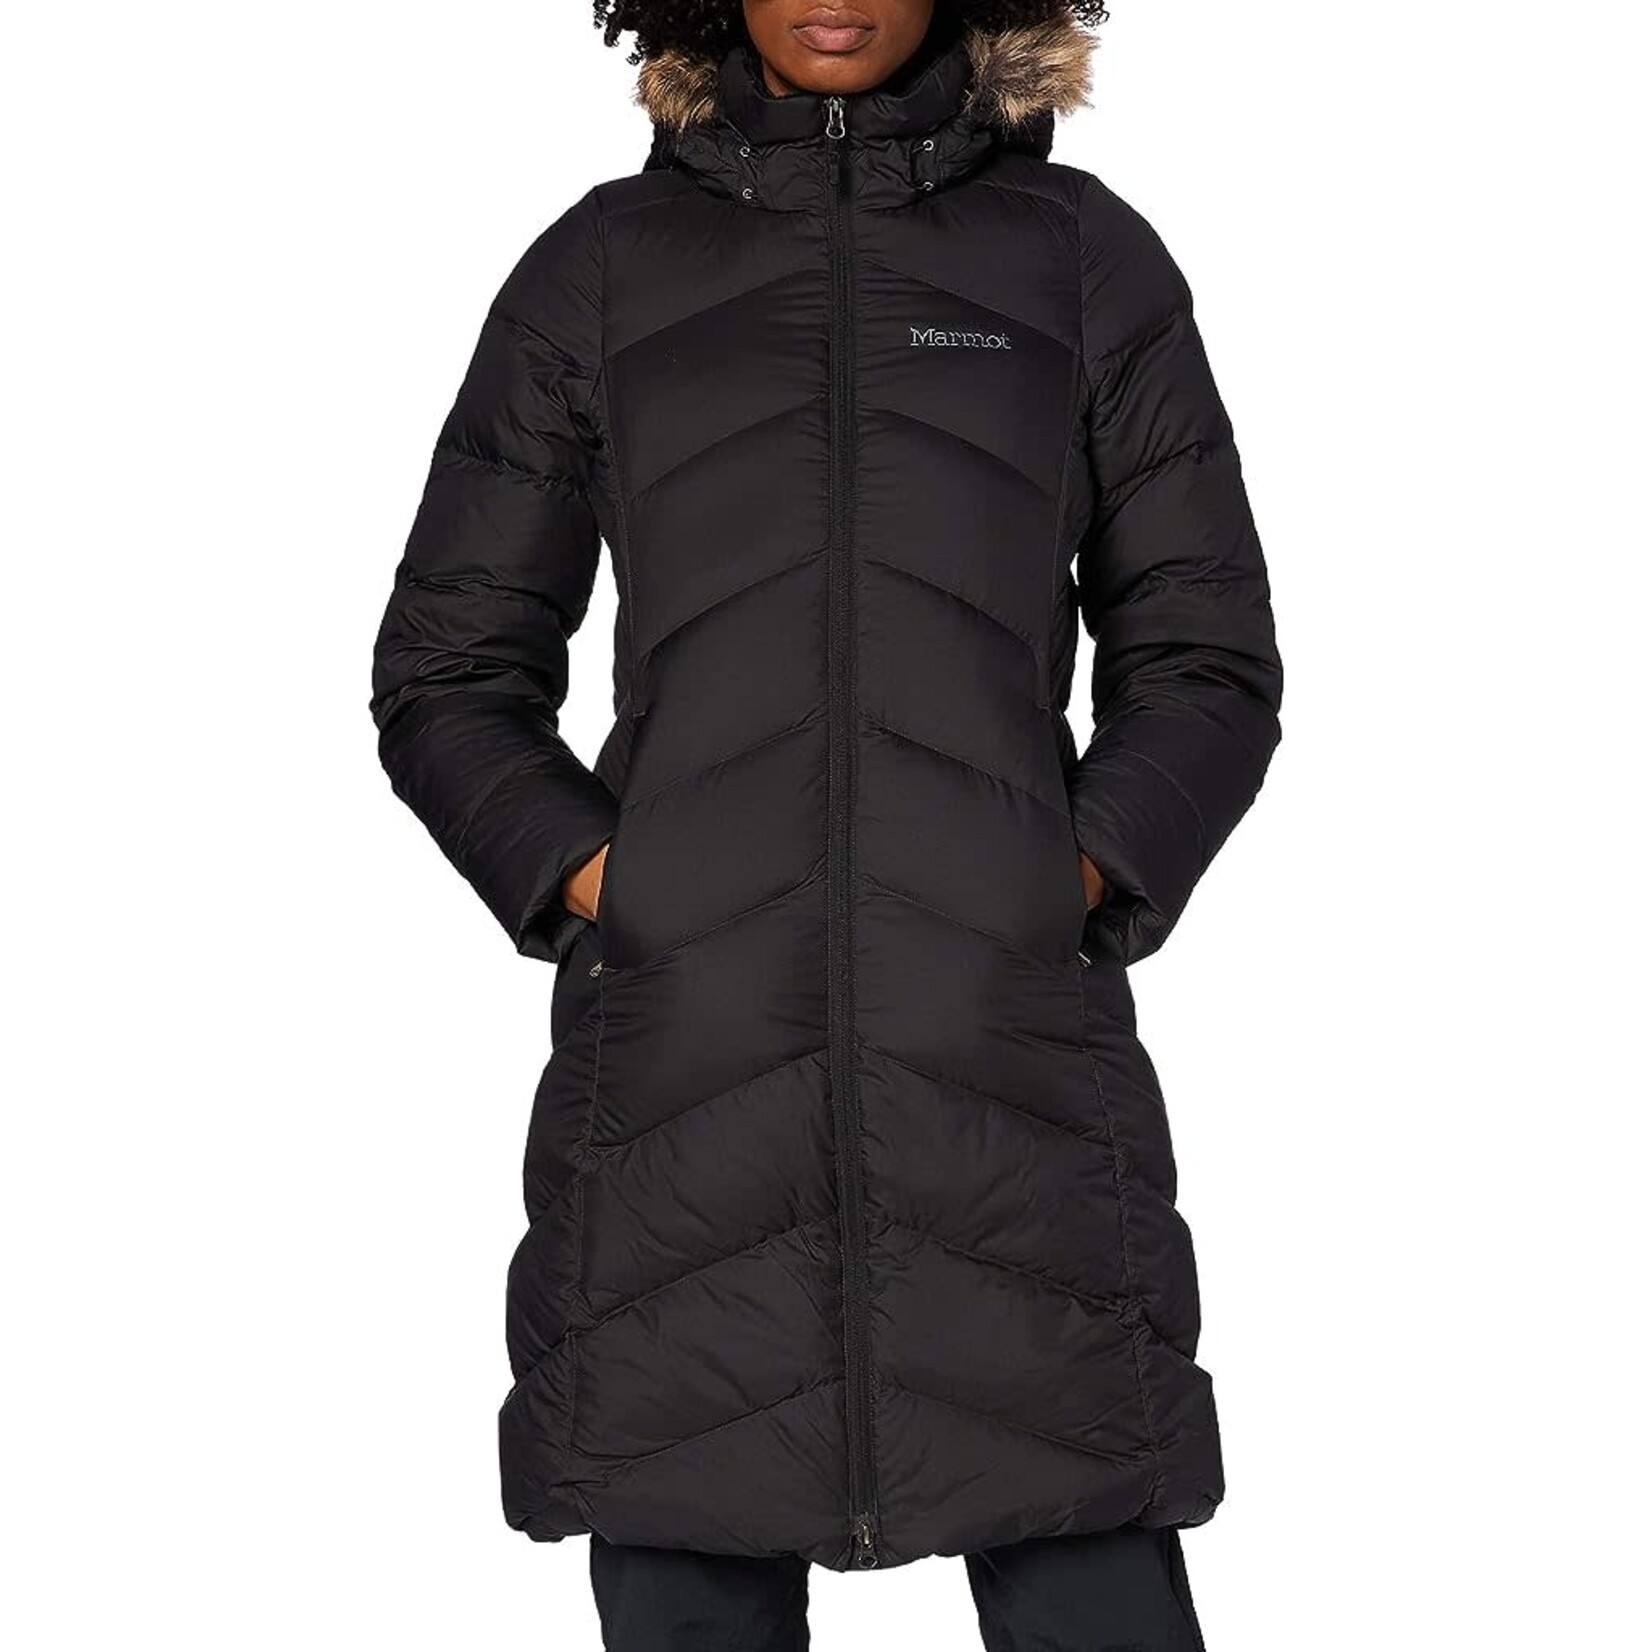 Marmot Manteau Wm's Montreux Coat pour femme